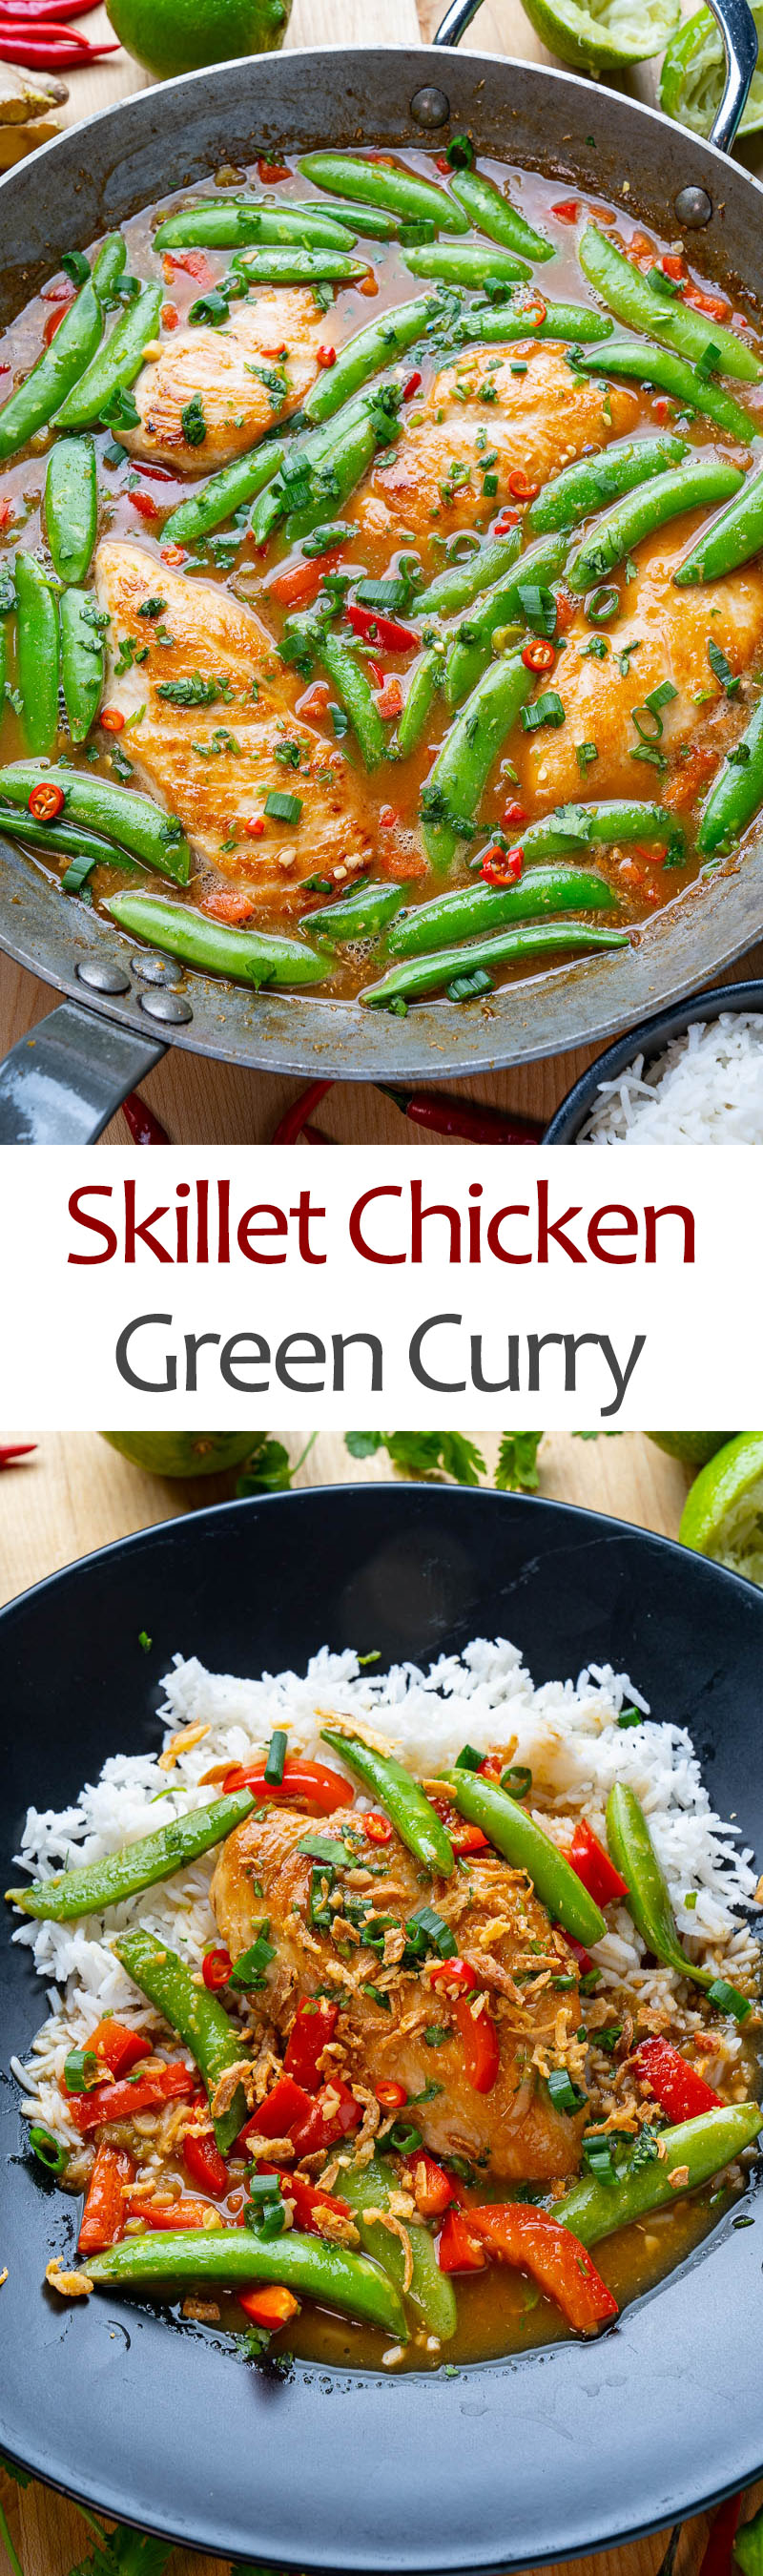 Skillet Green Curry Chicken